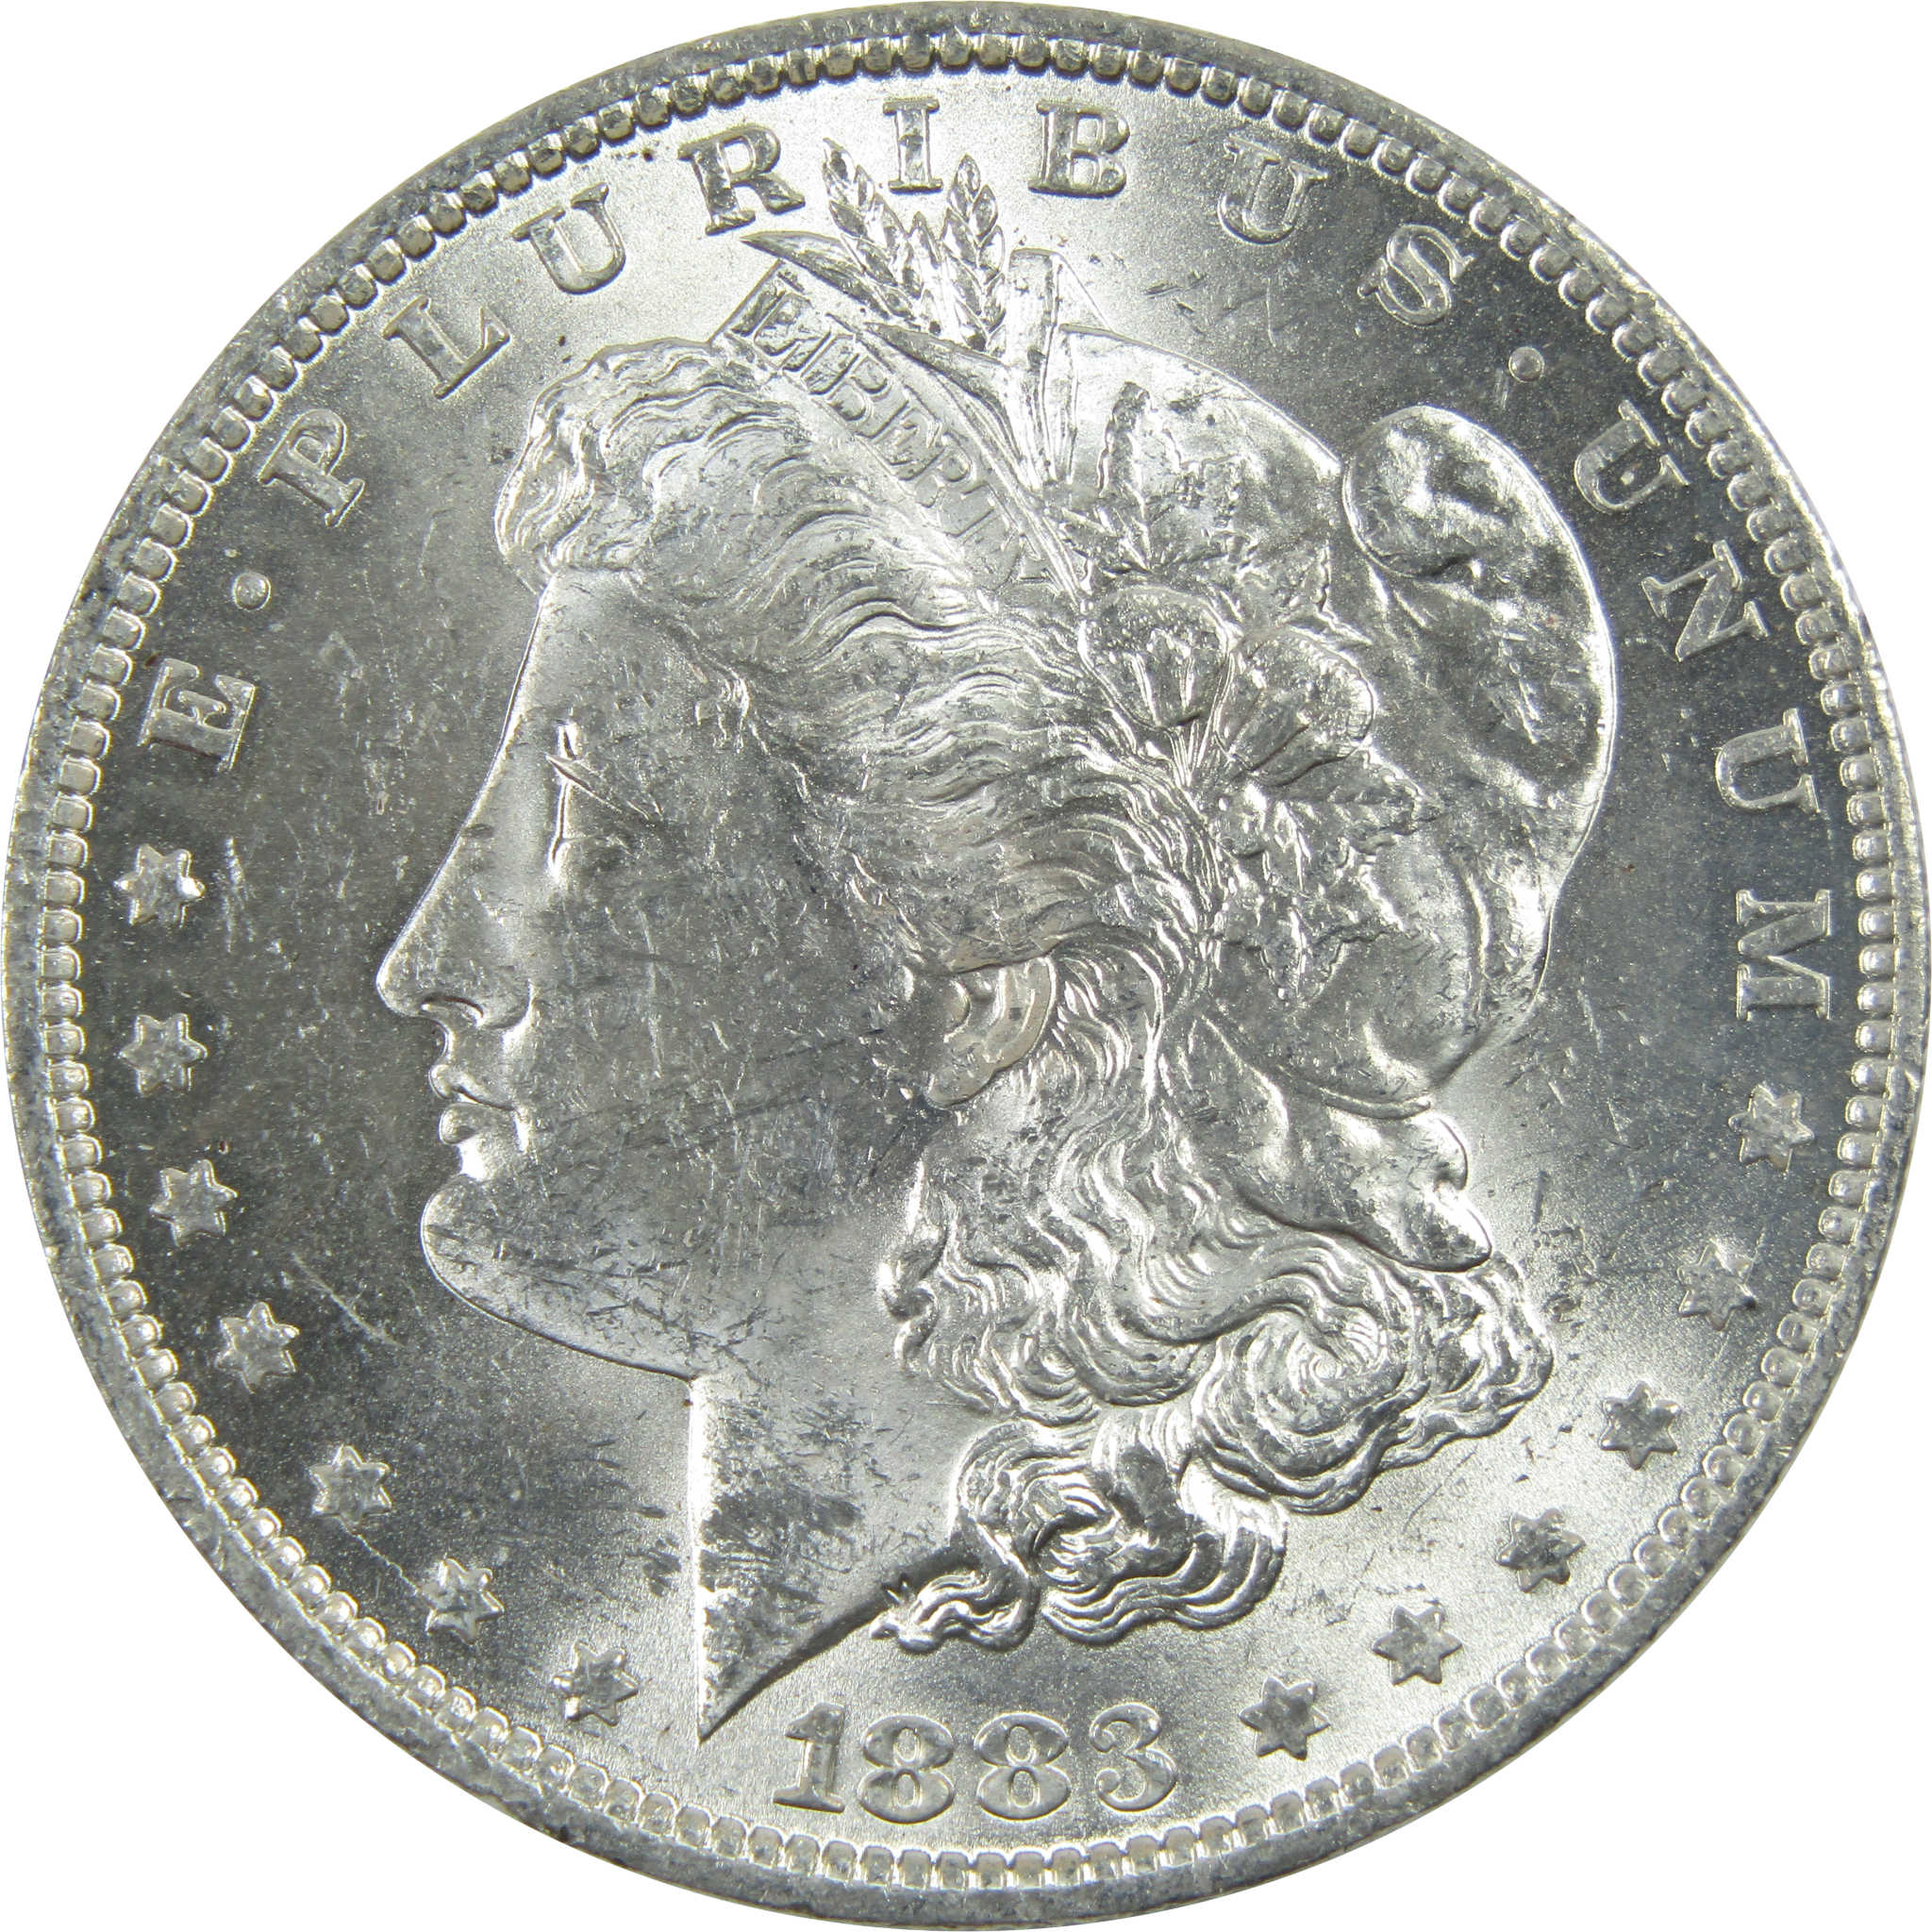 1883 O Morgan Dollar Uncirculated Silver $1 Coin SKU:I13423 - Morgan coin - Morgan silver dollar - Morgan silver dollar for sale - Profile Coins &amp; Collectibles